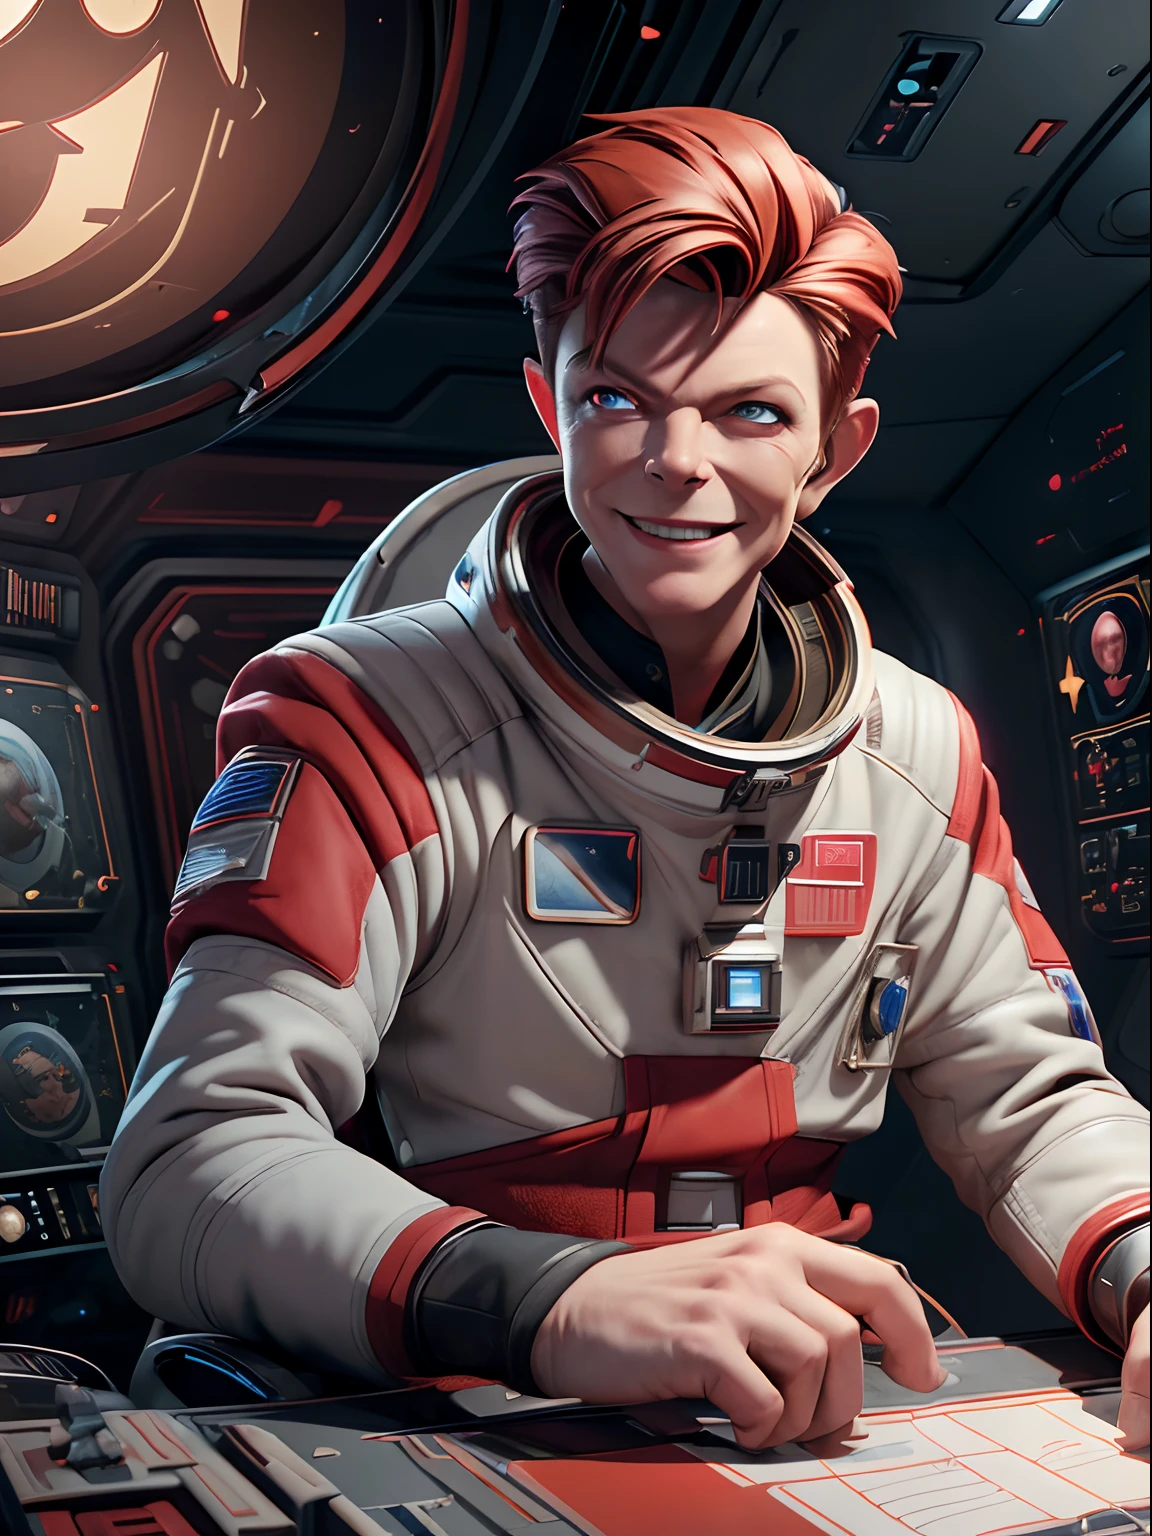 (шедевр, Лучшее качество, Иллюстрация, Унреальный движок 5, официальное искусство:1.3), Насыщенная красная цветовая гамма, картина (Дэвид Боуи) как улыбающийся майор Том, технократ, всеядный, переливающийся, командир космонавта, (Сидя в диспетчерской звездной базы:1.2),детальное лицо, безумно сложная деталь, абсурд, 8К